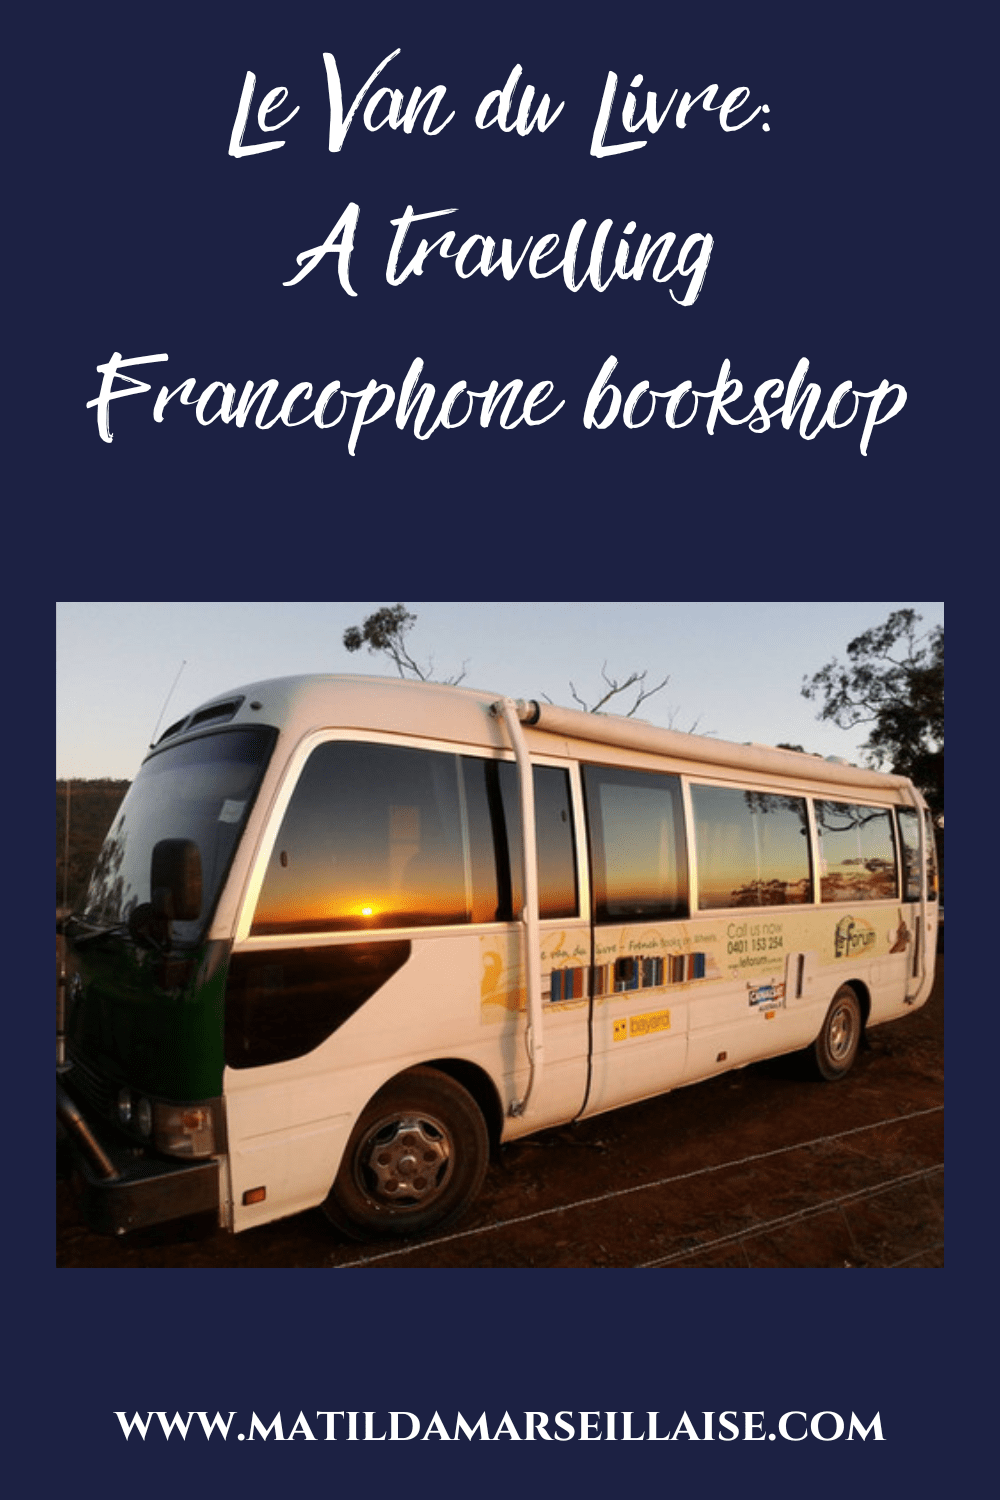 Le Van du Livre is a travelling Francophone bookshop in Australia